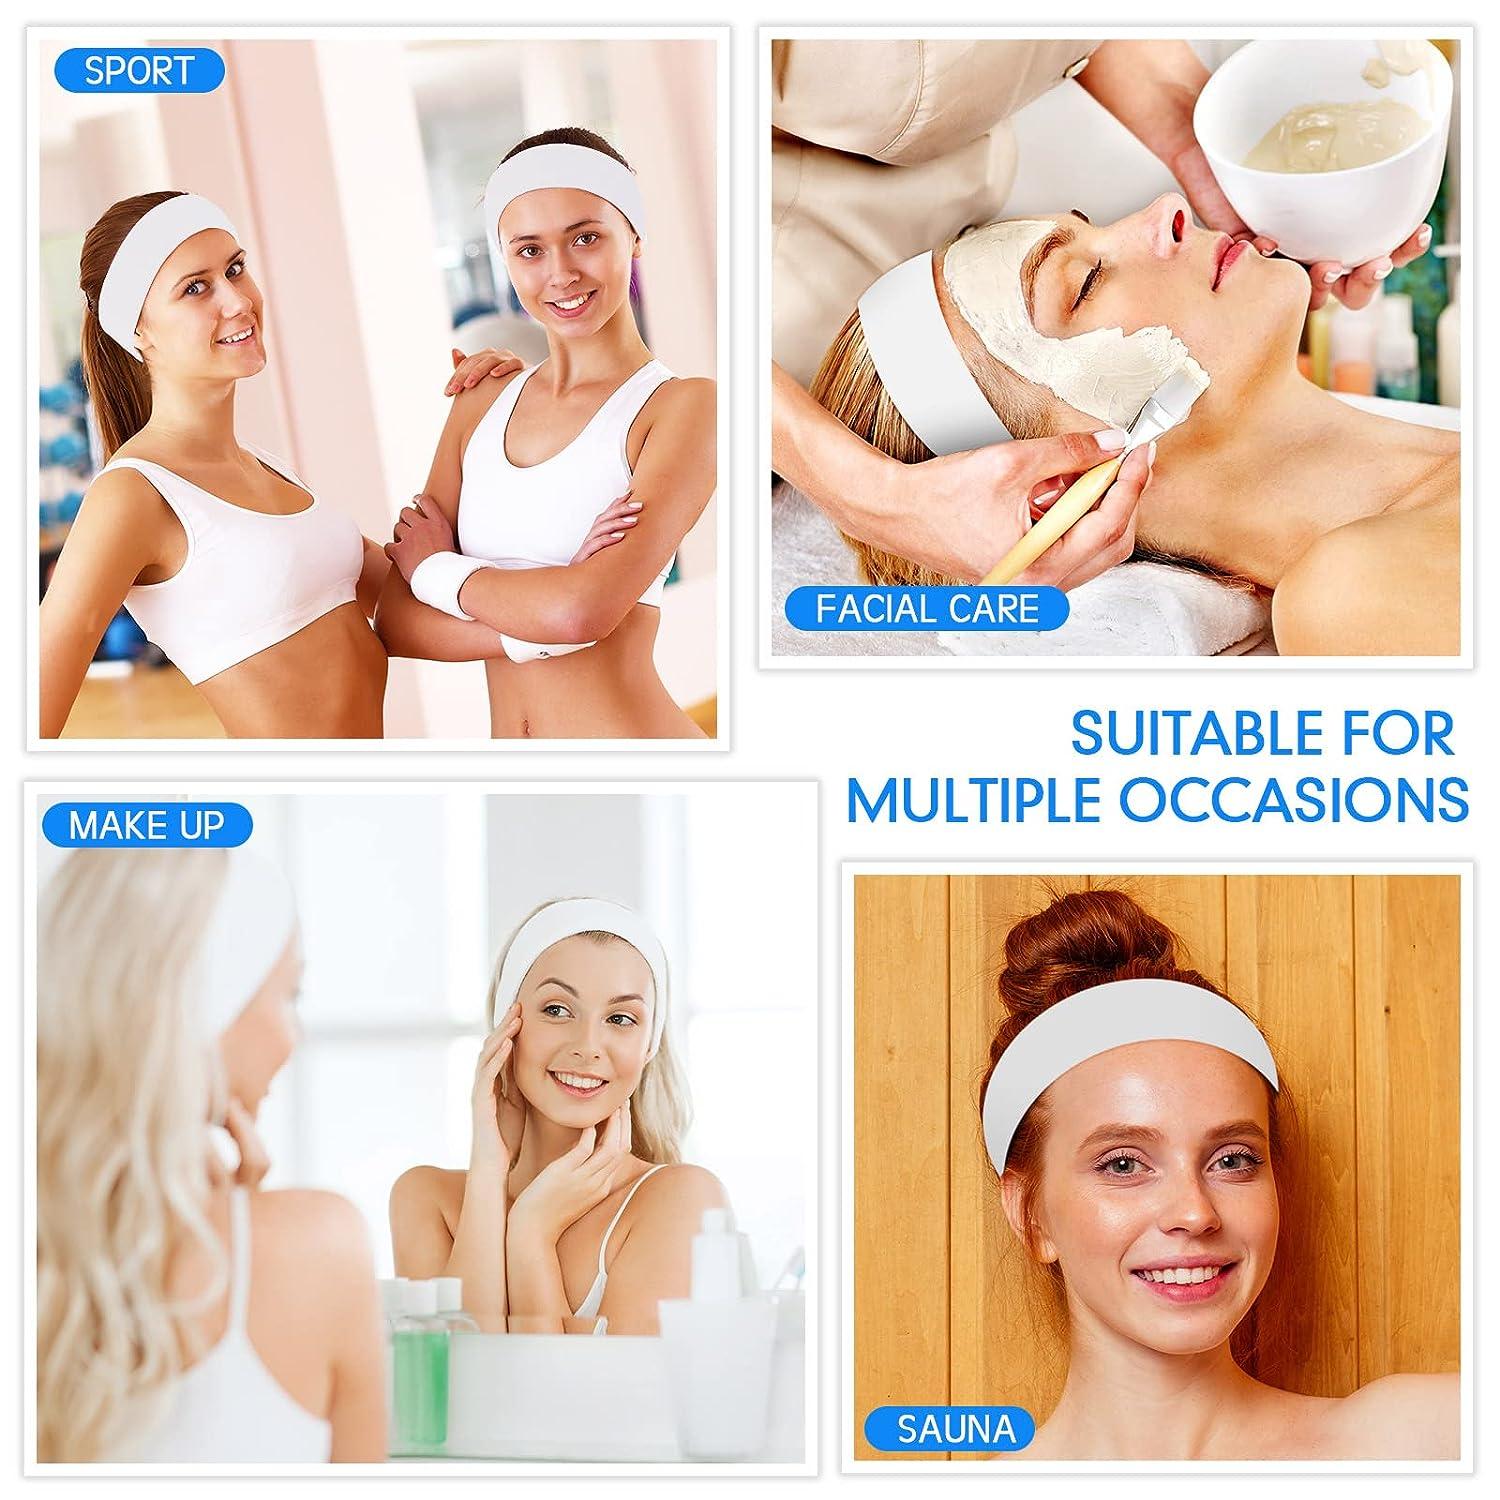 MTLEE 12 Pieces Disposable Spa Facial Headbands with Convenient